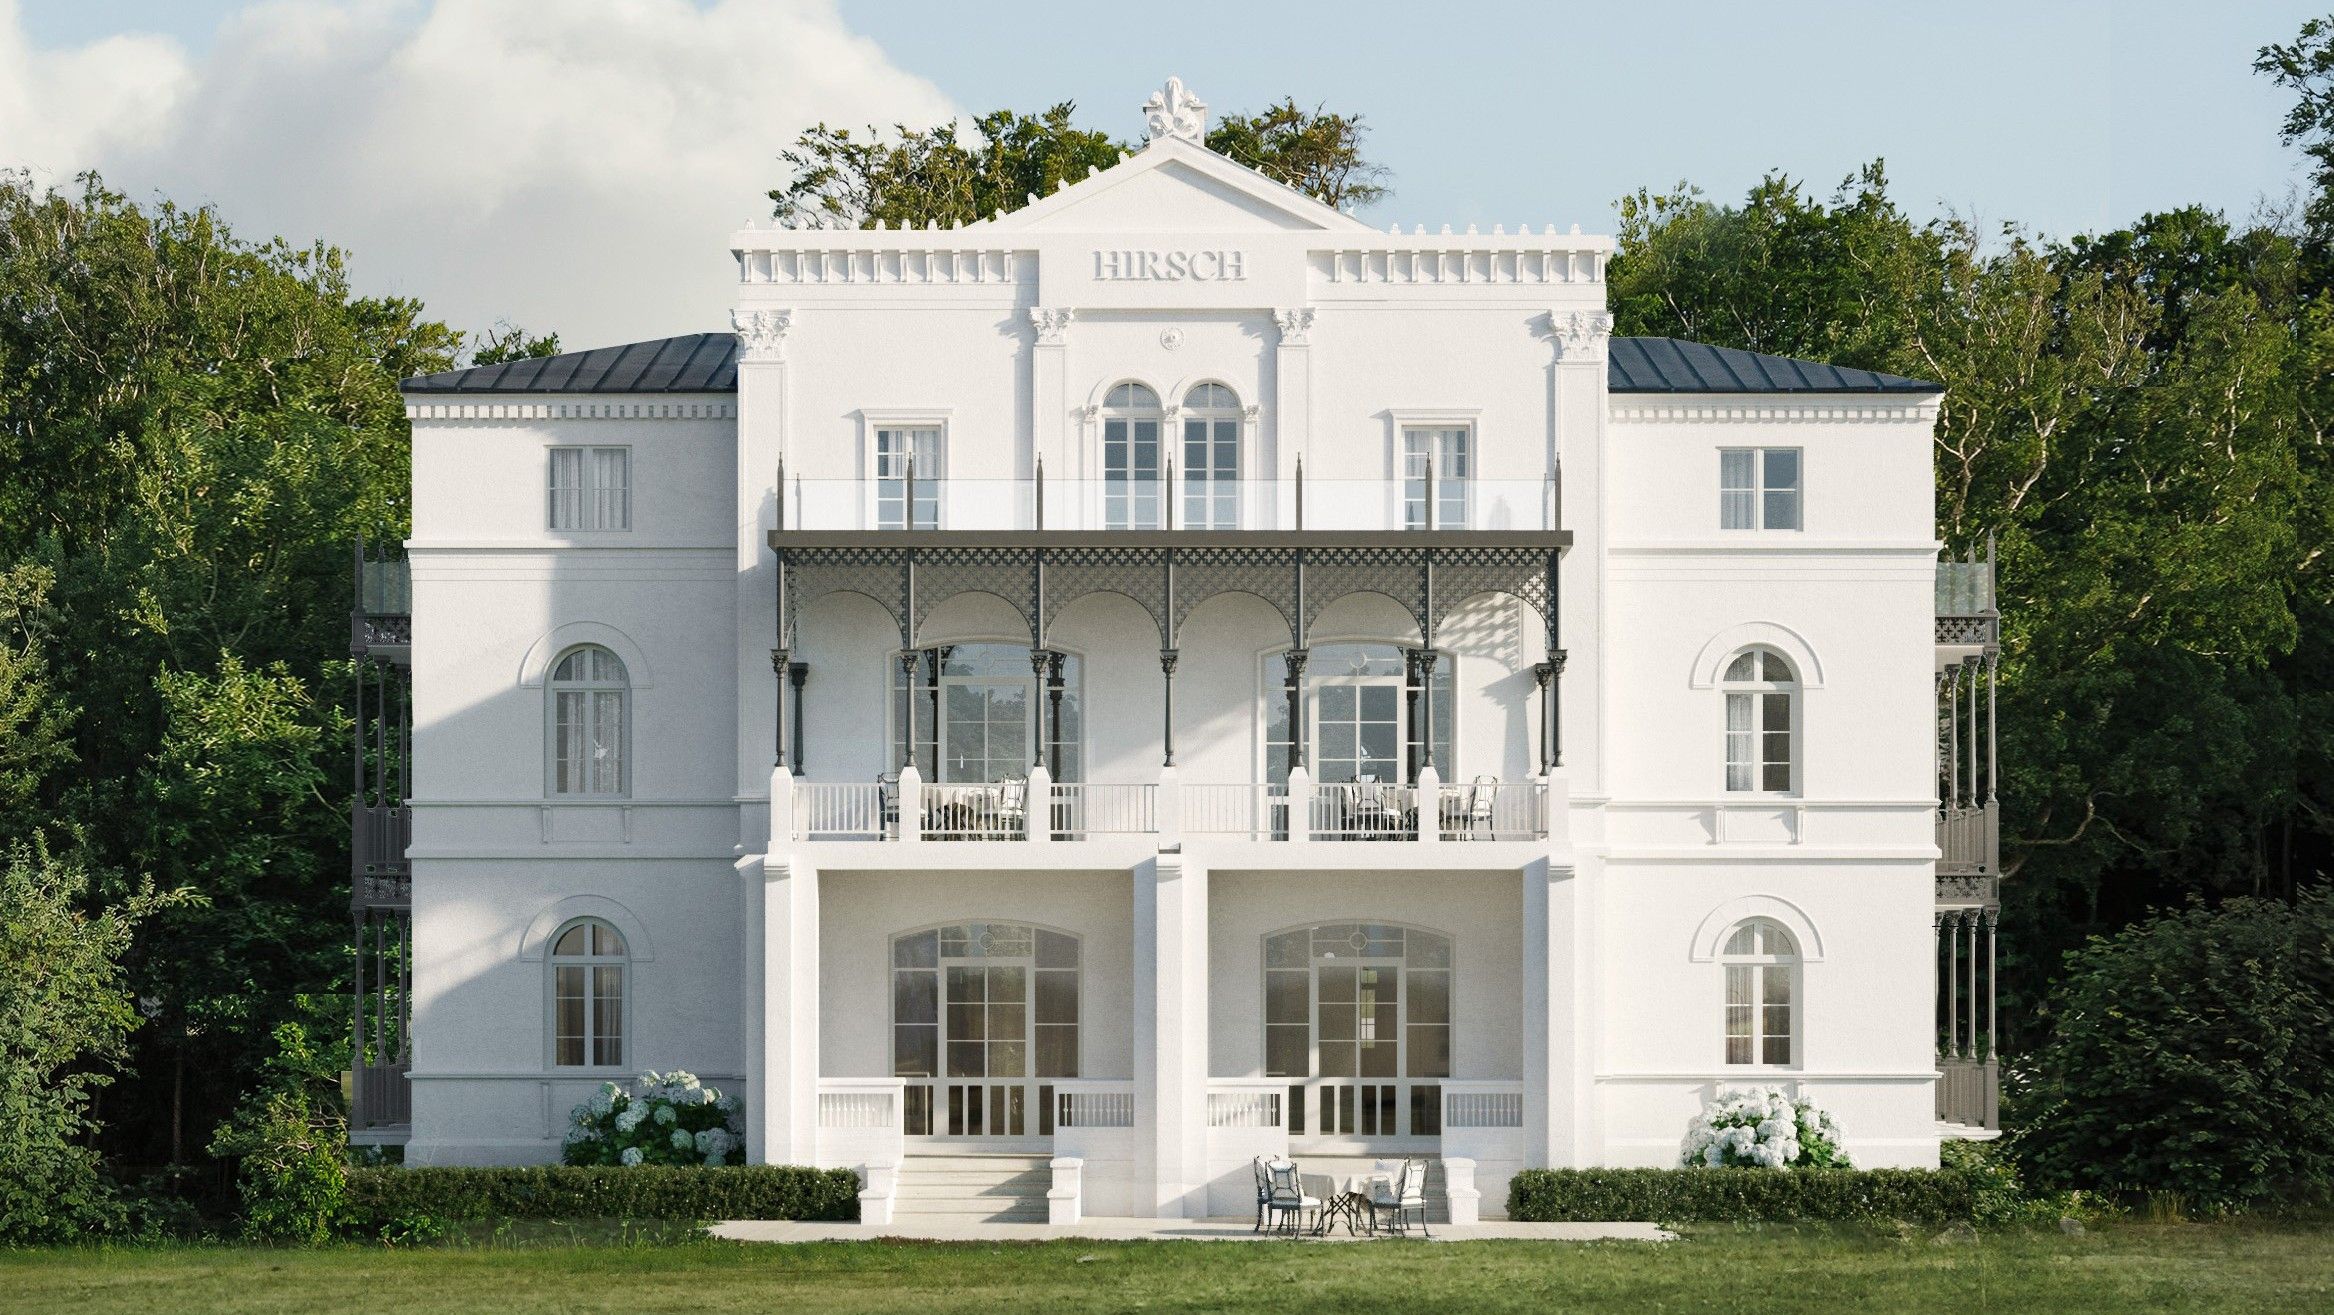 Immagini Villa Hirsch nella località balneare del Mar Baltico di Heiligendamm